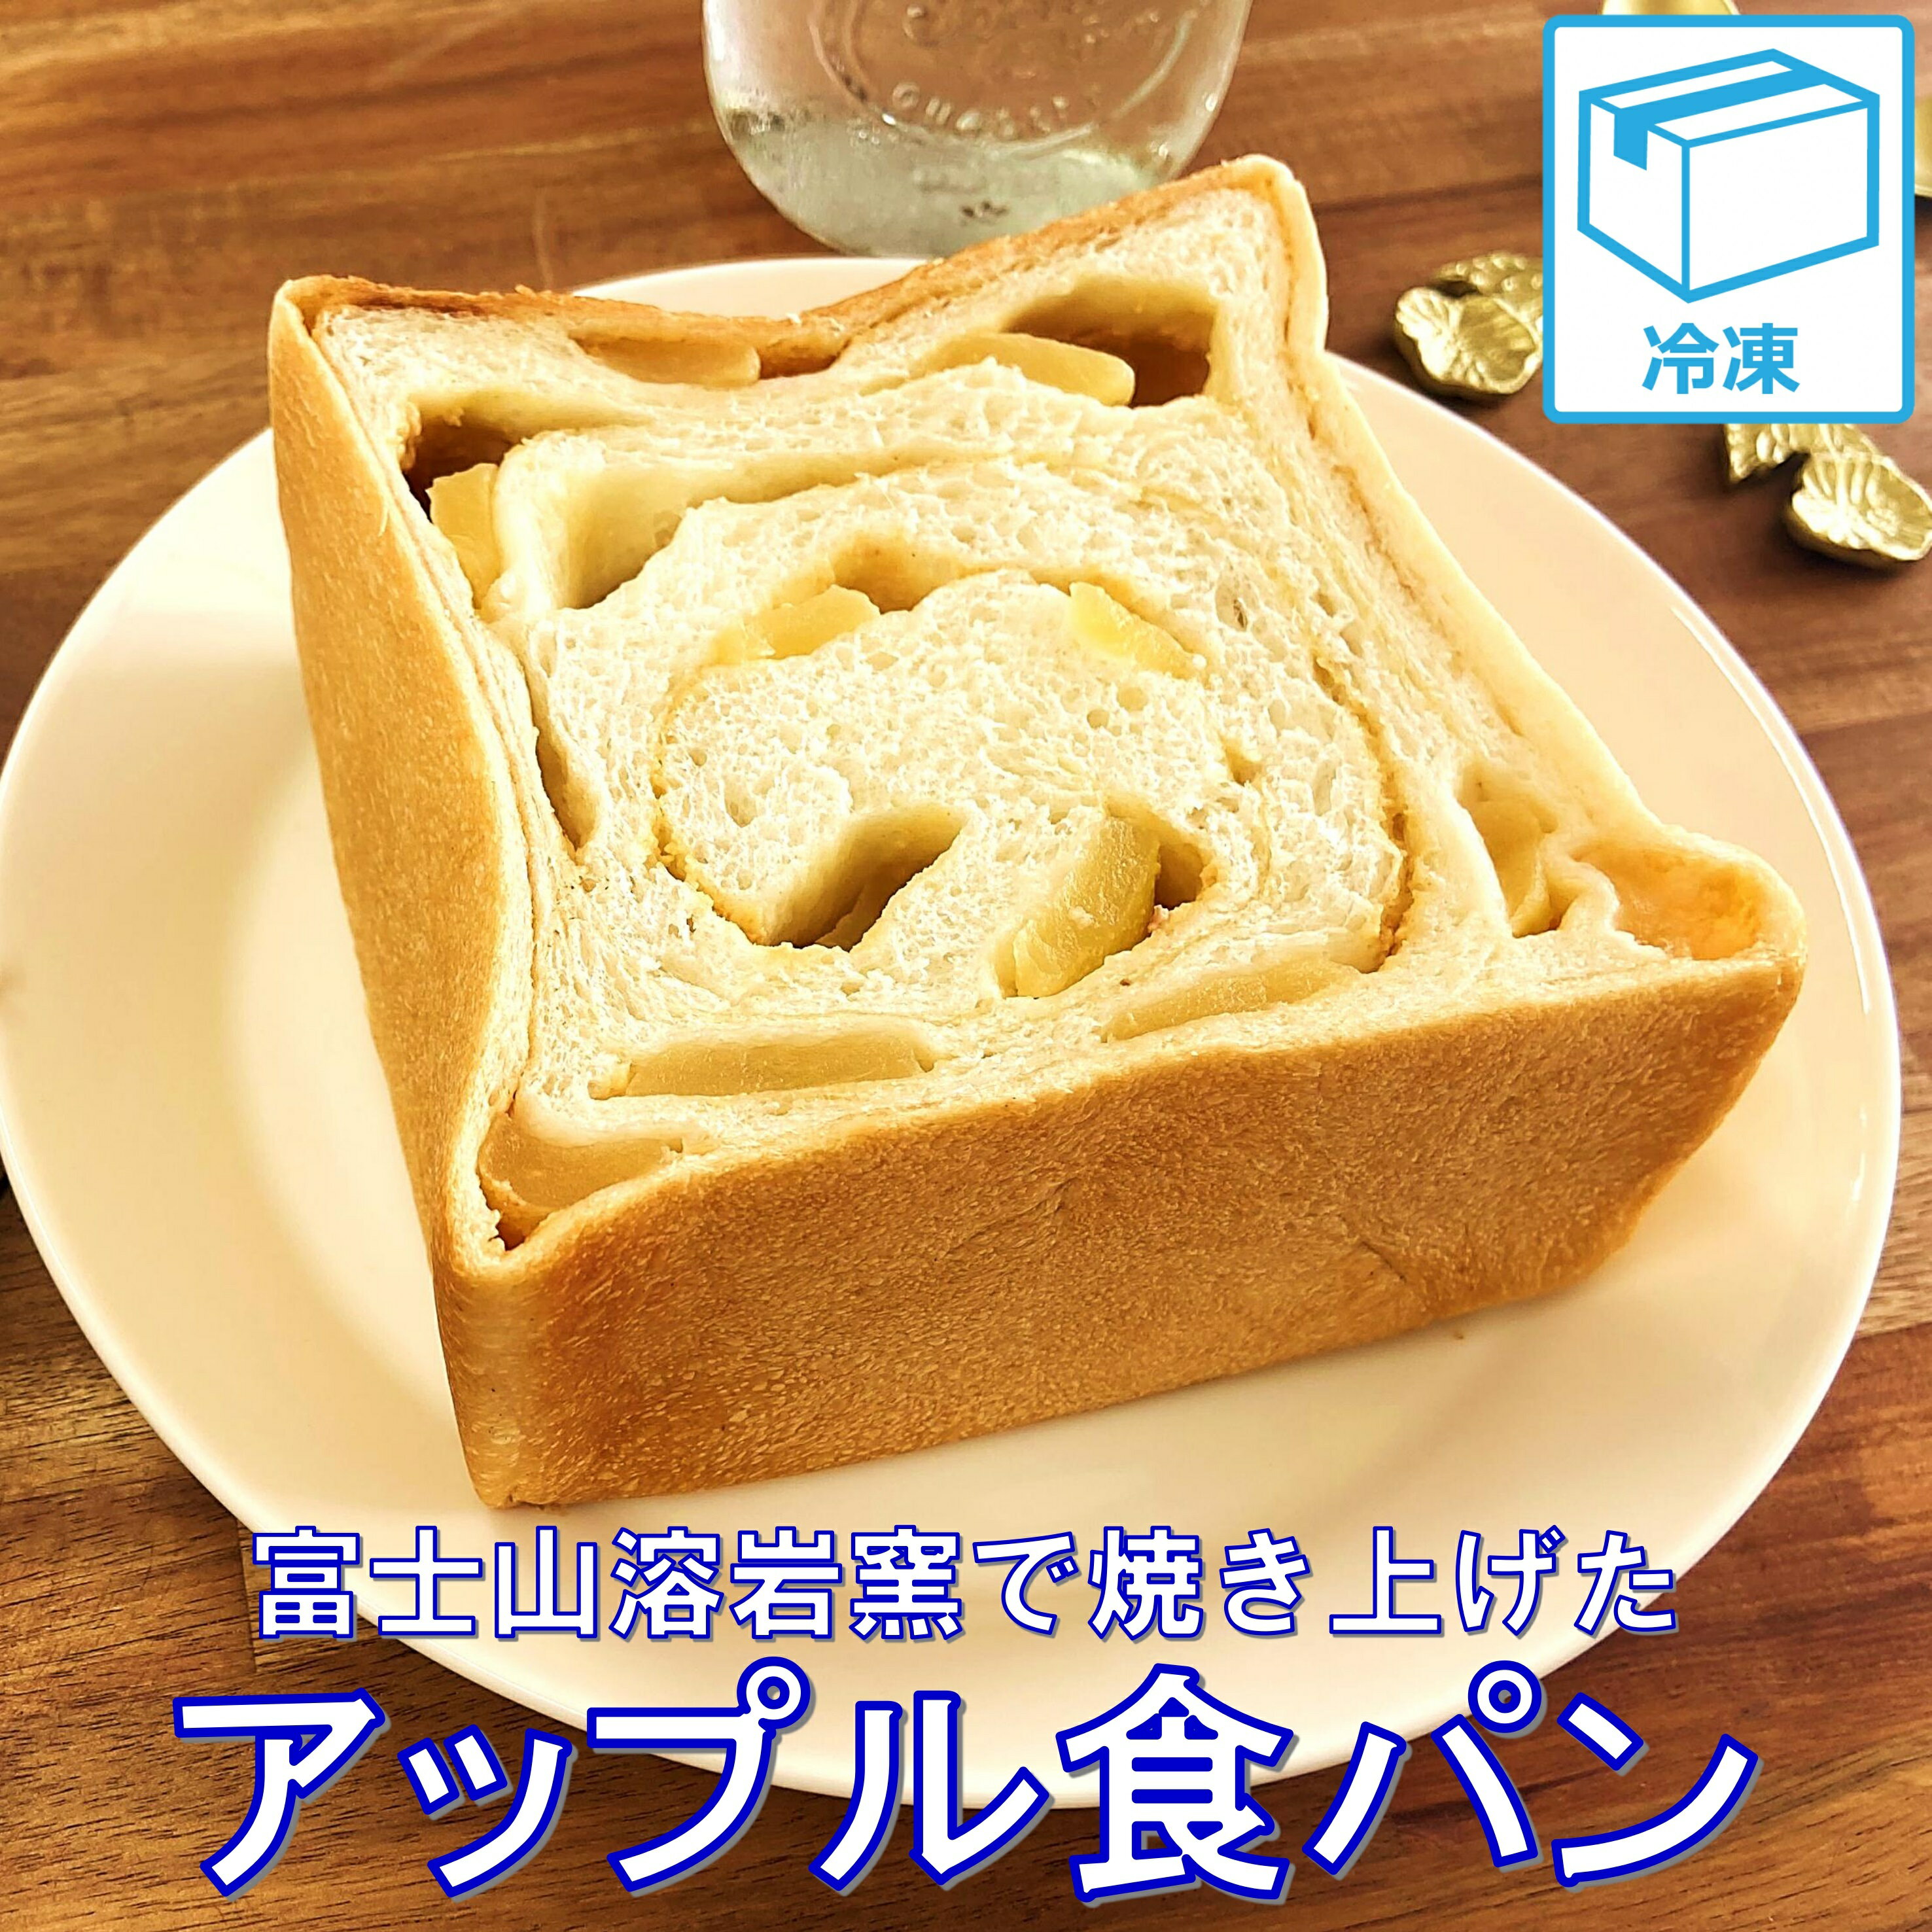 【アップル食パンハーフサイズ1個